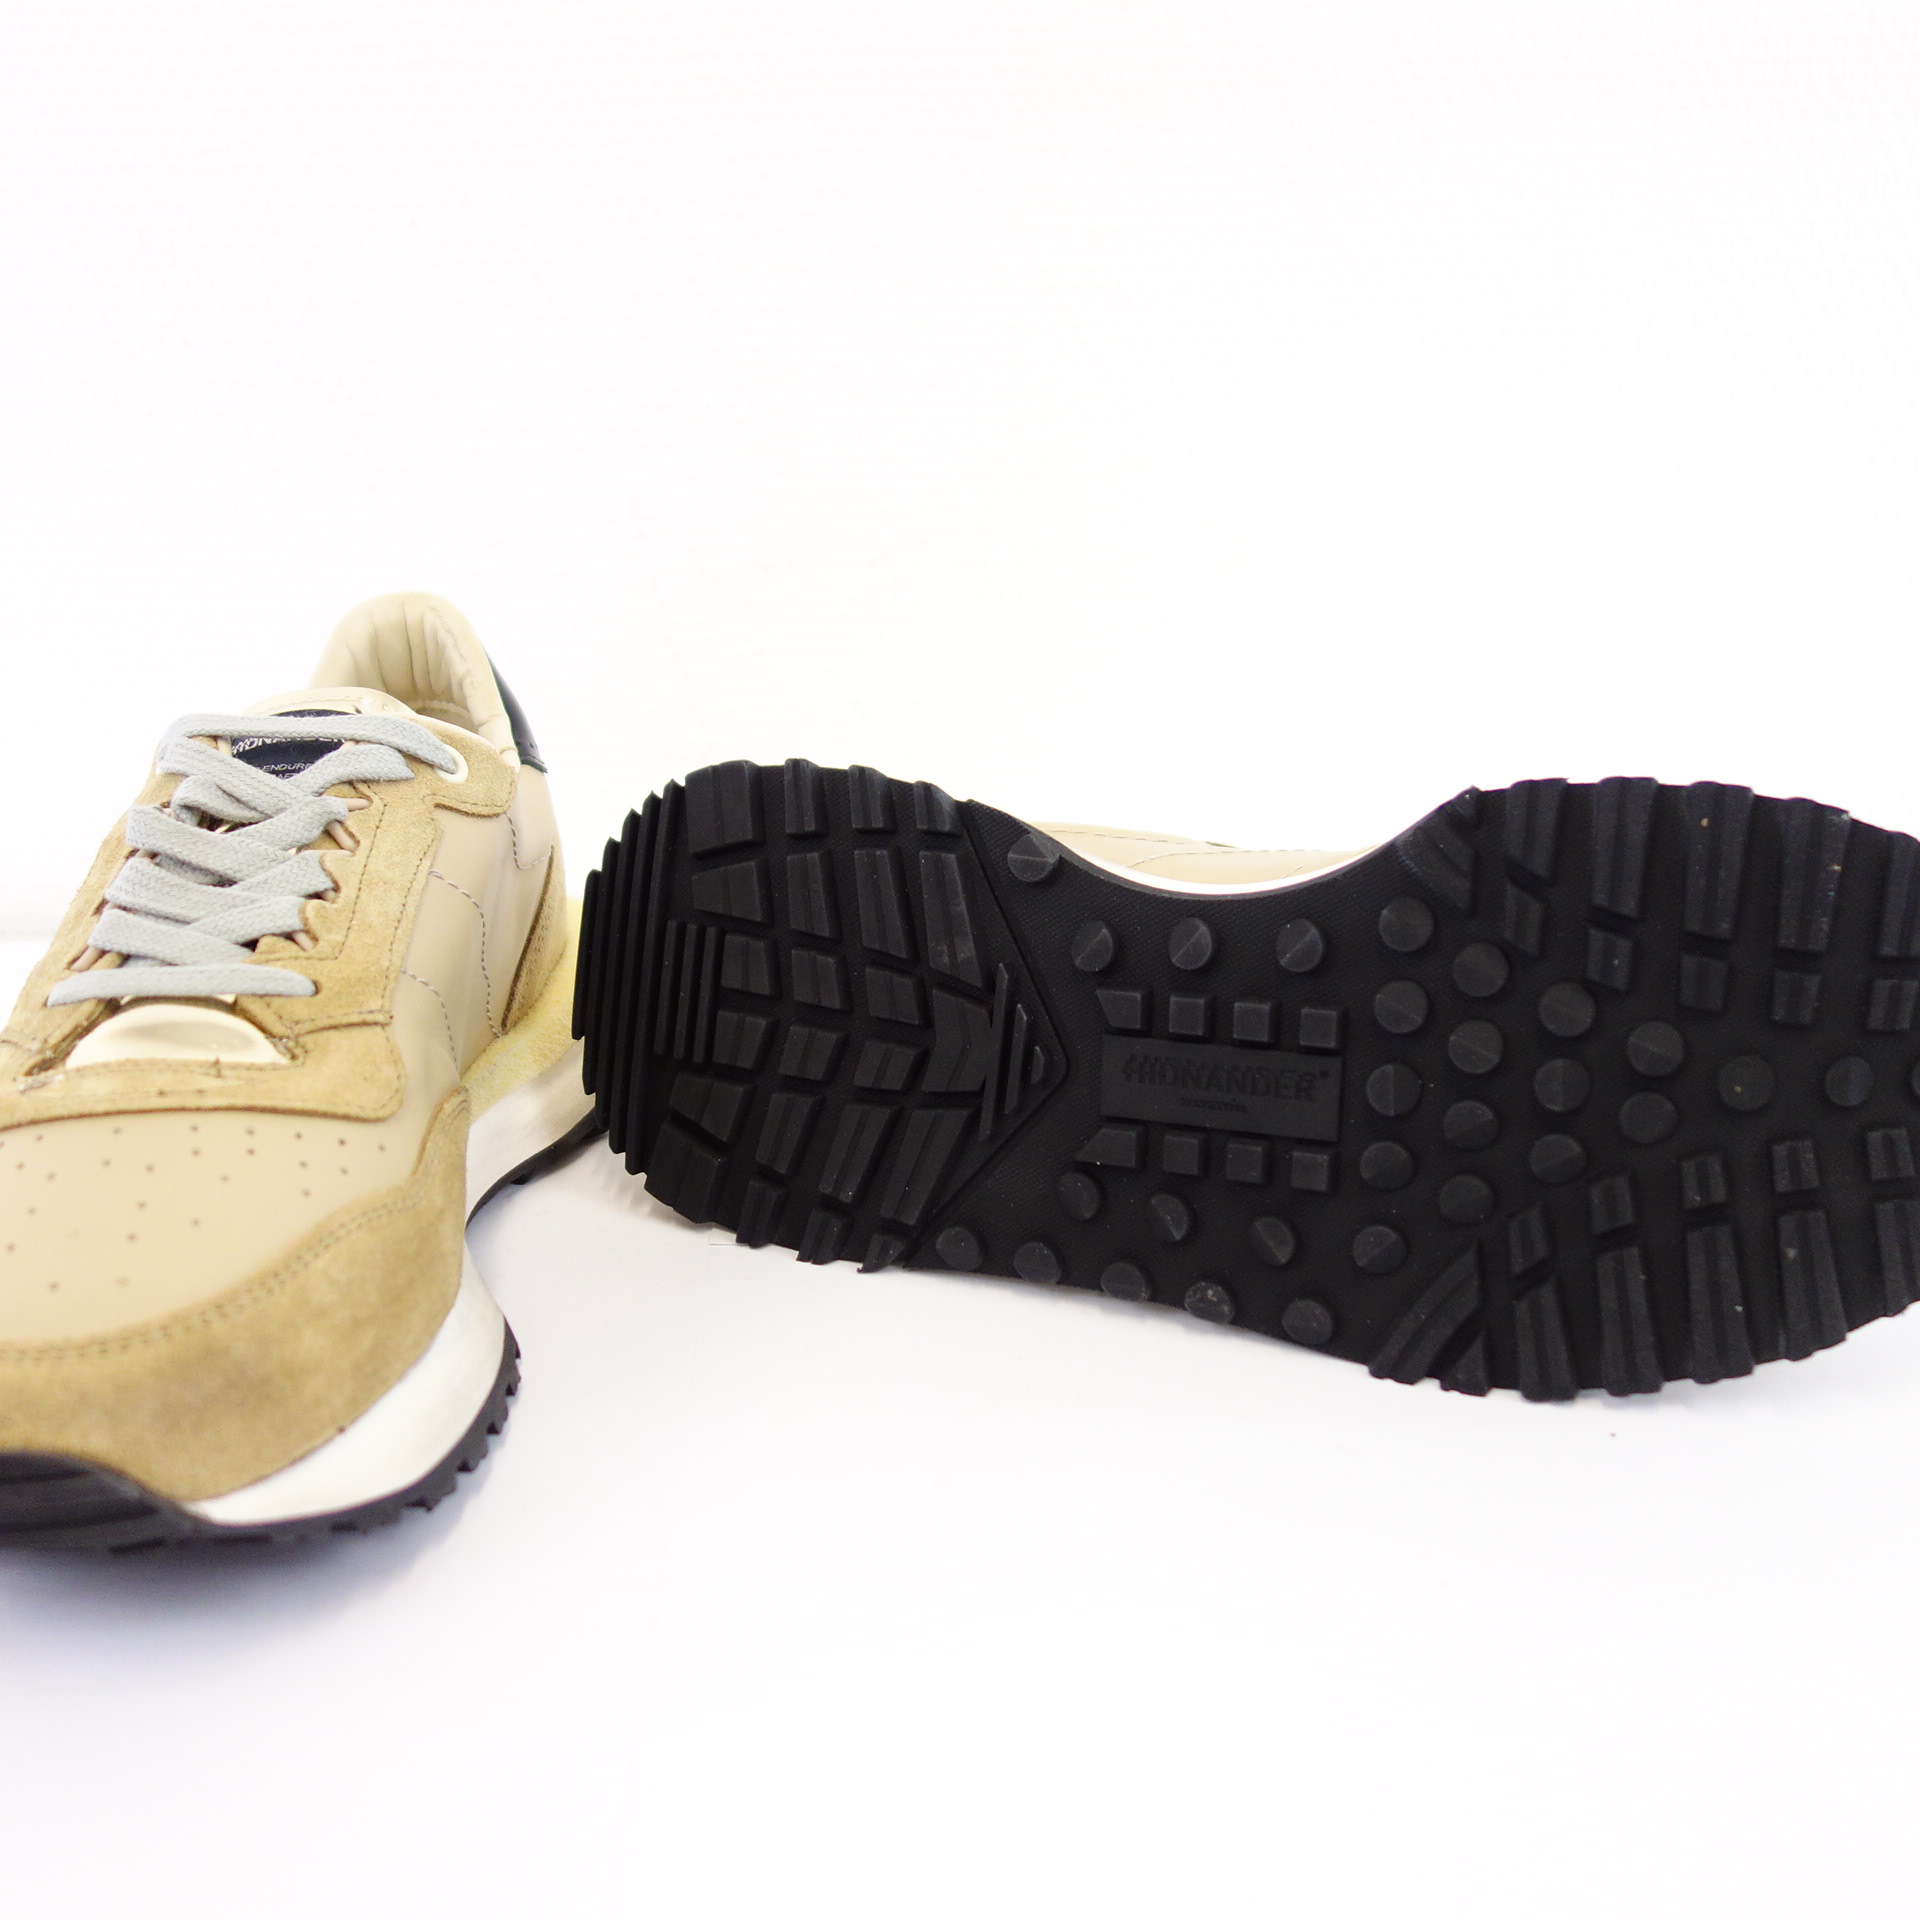 HIDNANDER Damen Schuhe Low Top Sneaker Sportschuhe Gold Modell TENKEI Leder Textil